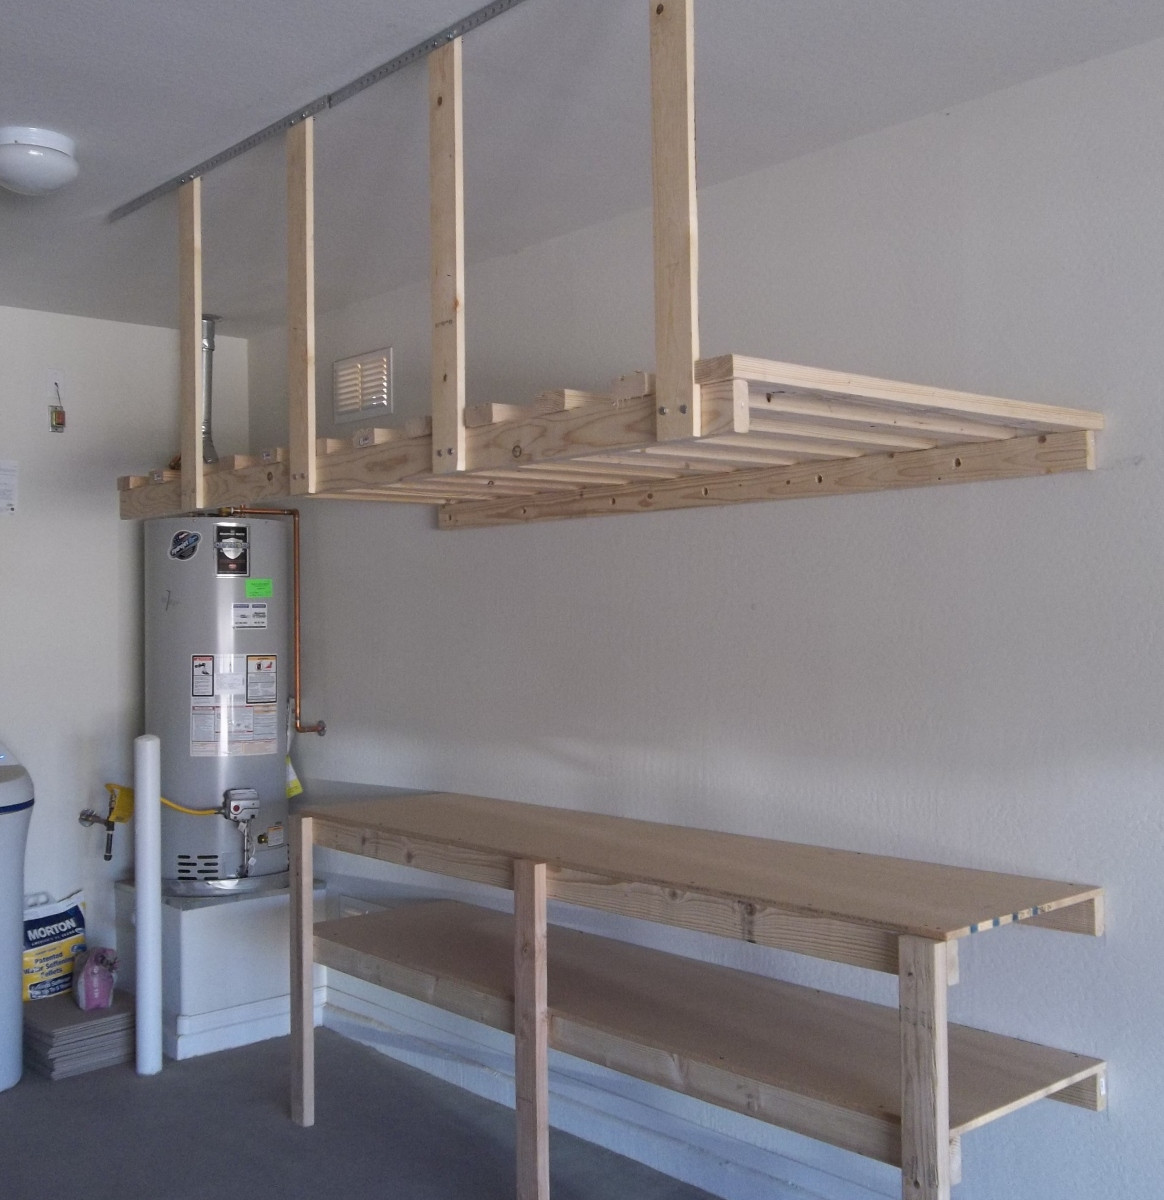 Best ideas about Garage Hanging Storage
. Save or Pin Garage Storage Layout Vertical Home Garden Now.